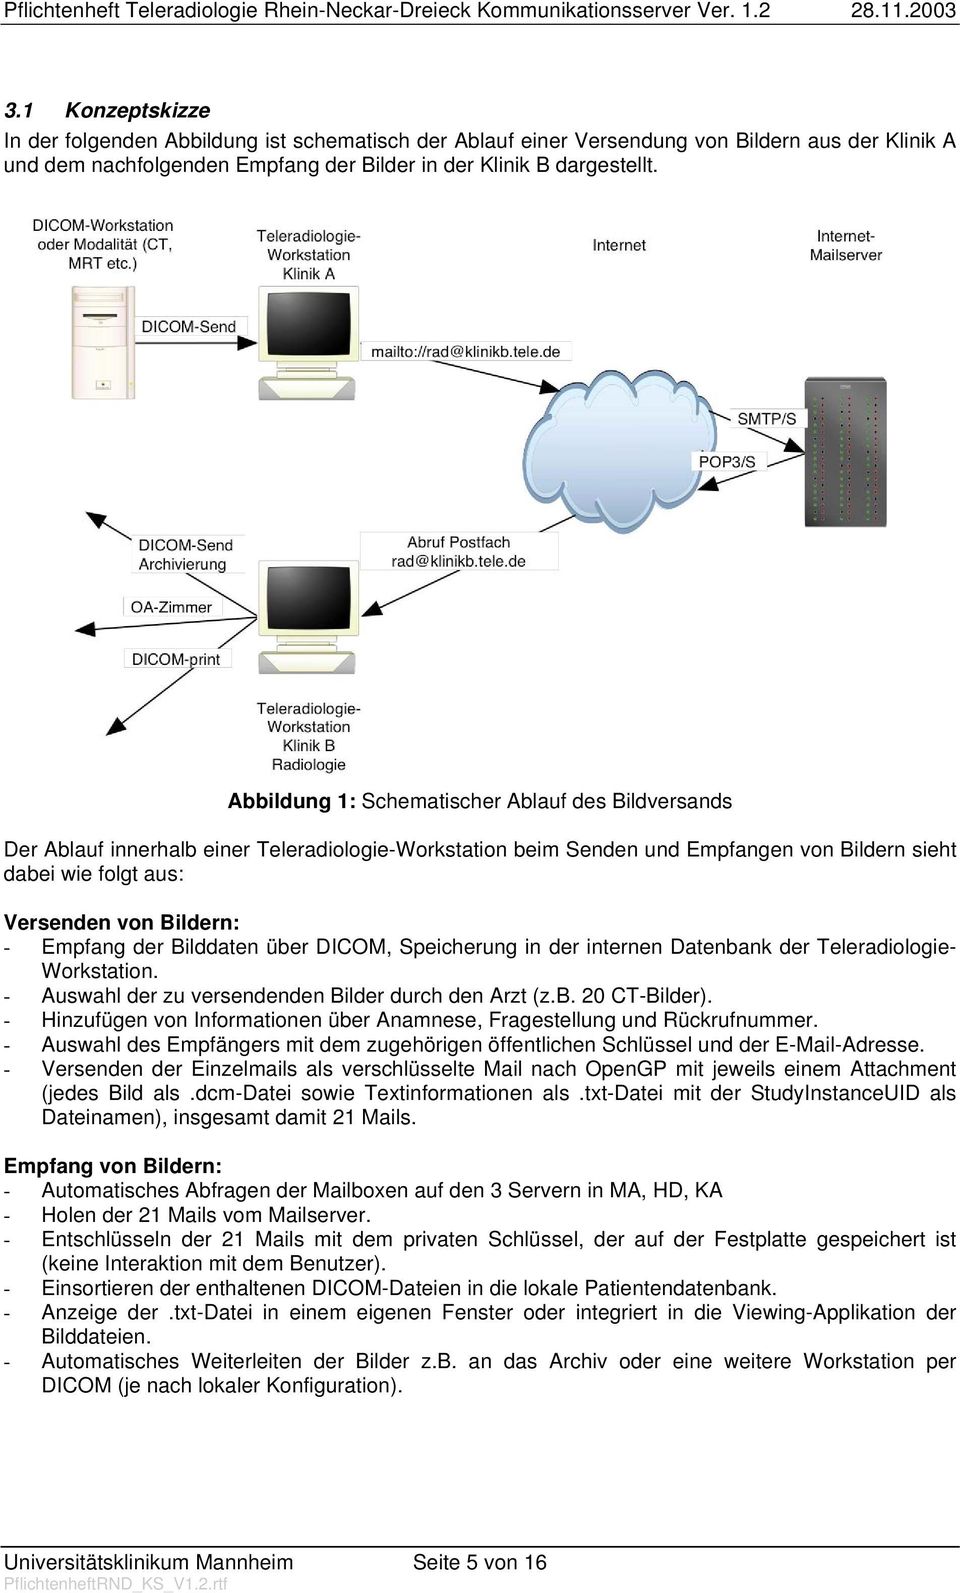 Empfang der Bilddaten über DICOM, Speicherung in der internen Datenbank der Teleradiologie- Workstation. - Auswahl der zu versendenden Bilder durch den Arzt (z.b. 20 CT-Bilder).